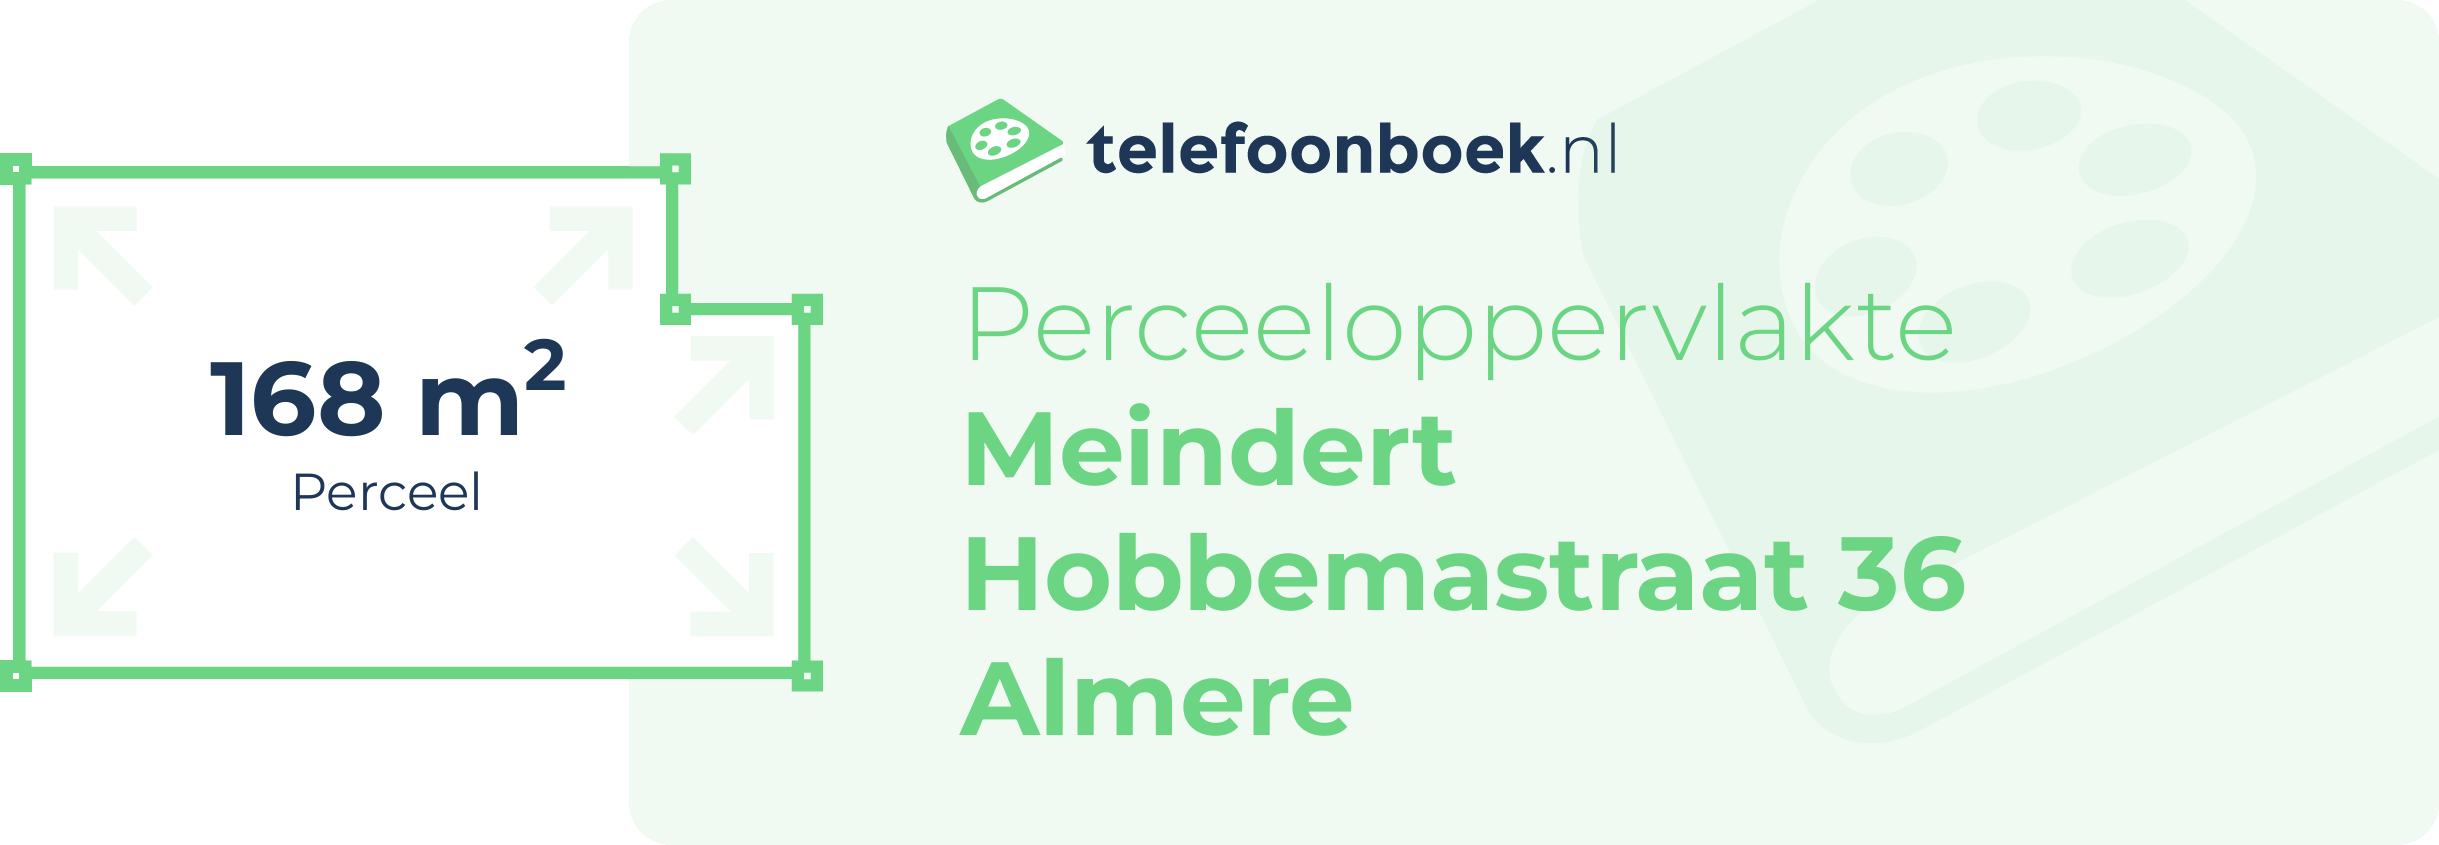 Perceeloppervlakte Meindert Hobbemastraat 36 Almere